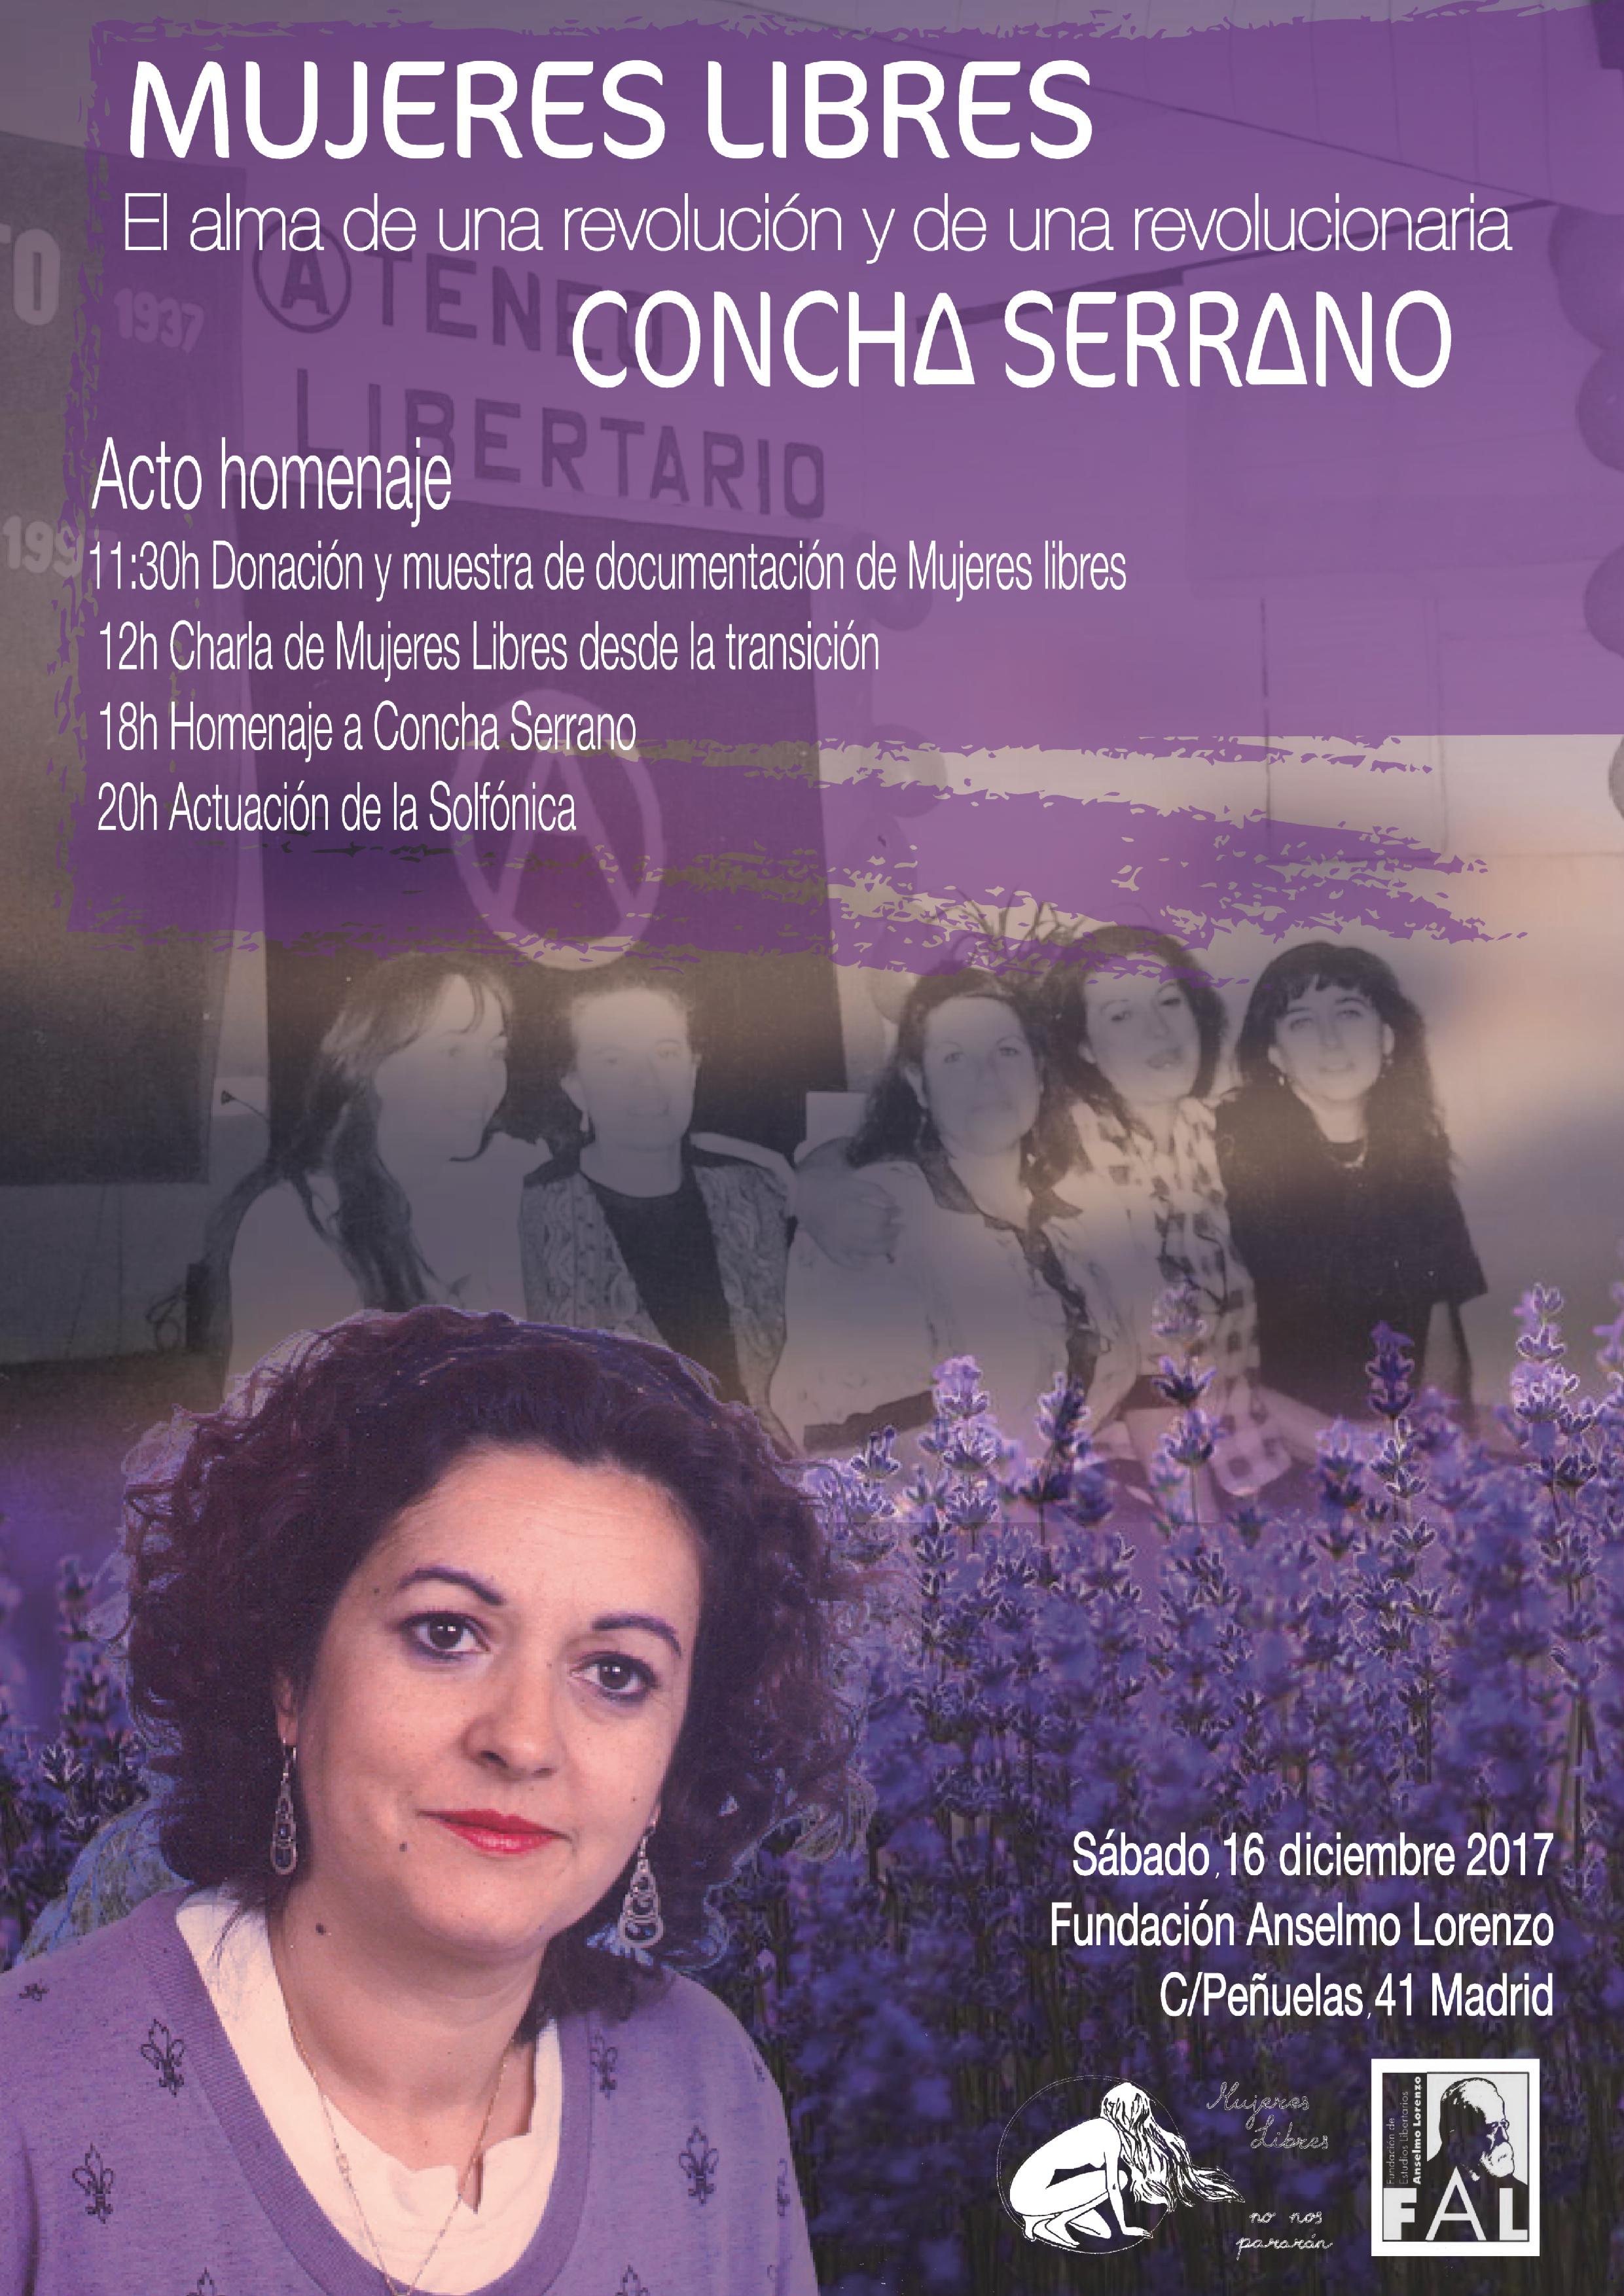 Mujeres libres: entrega y muestra de documentación y homenaje a Concha Serrano